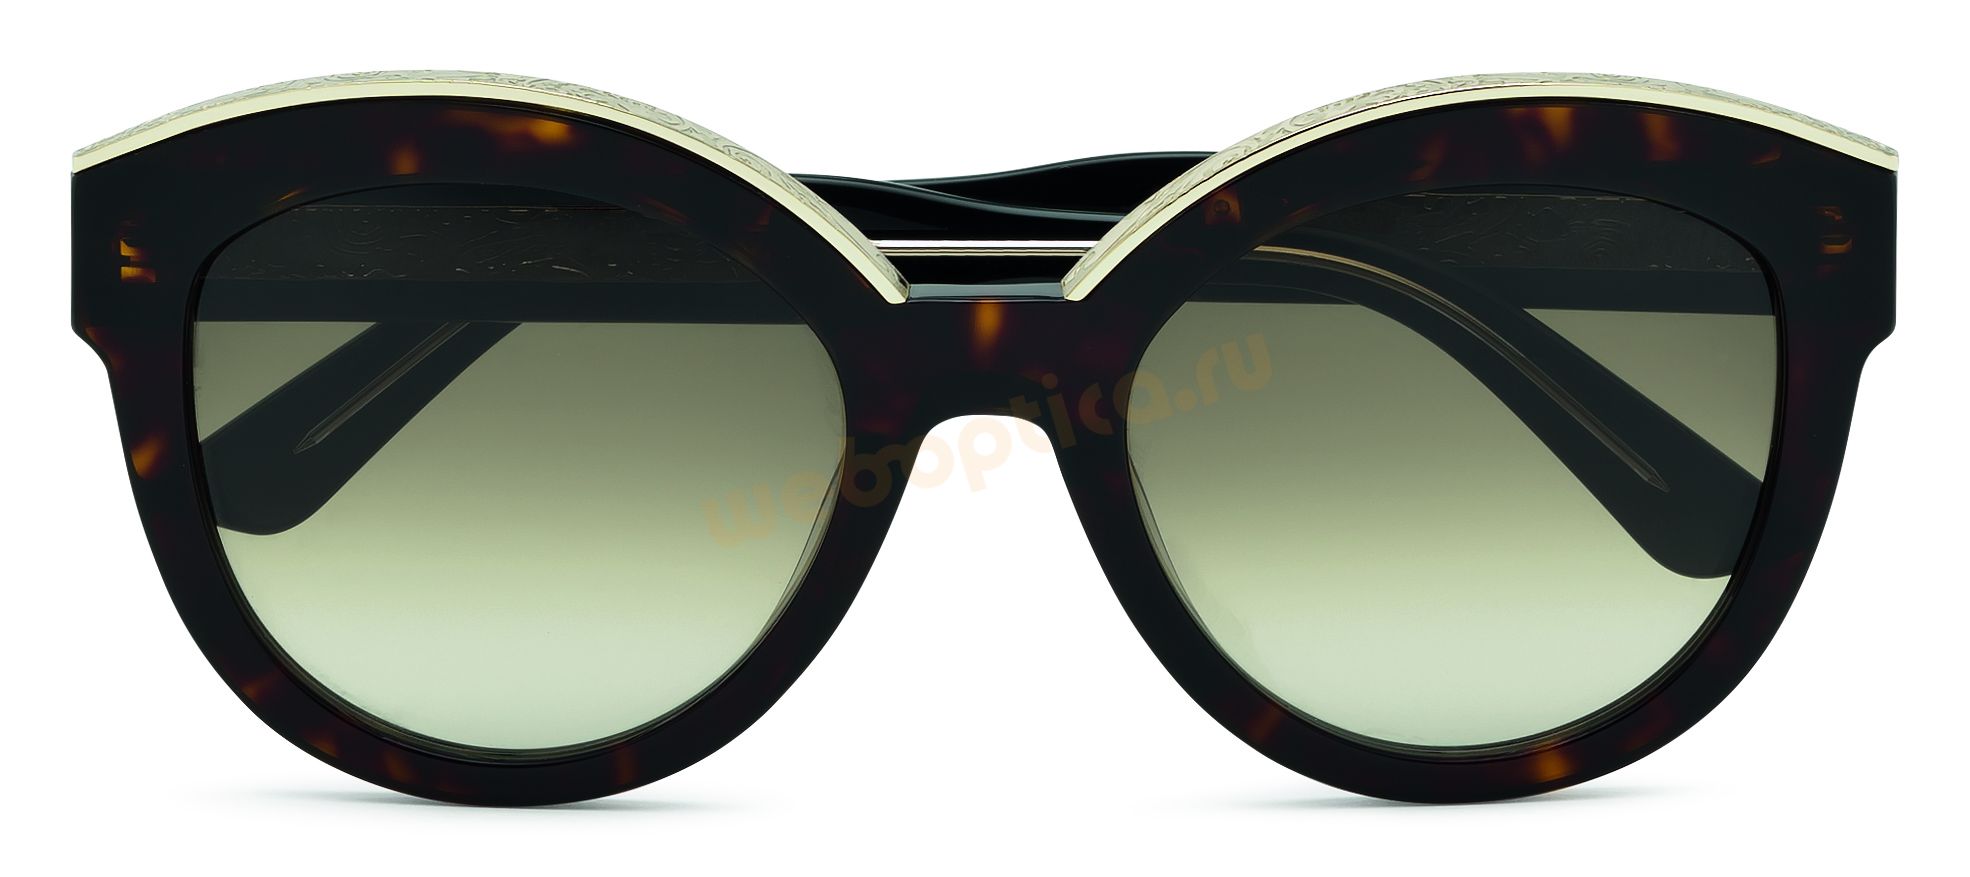 Солнцезащитные очки Etro-604S-215 цена купить интернет магазин